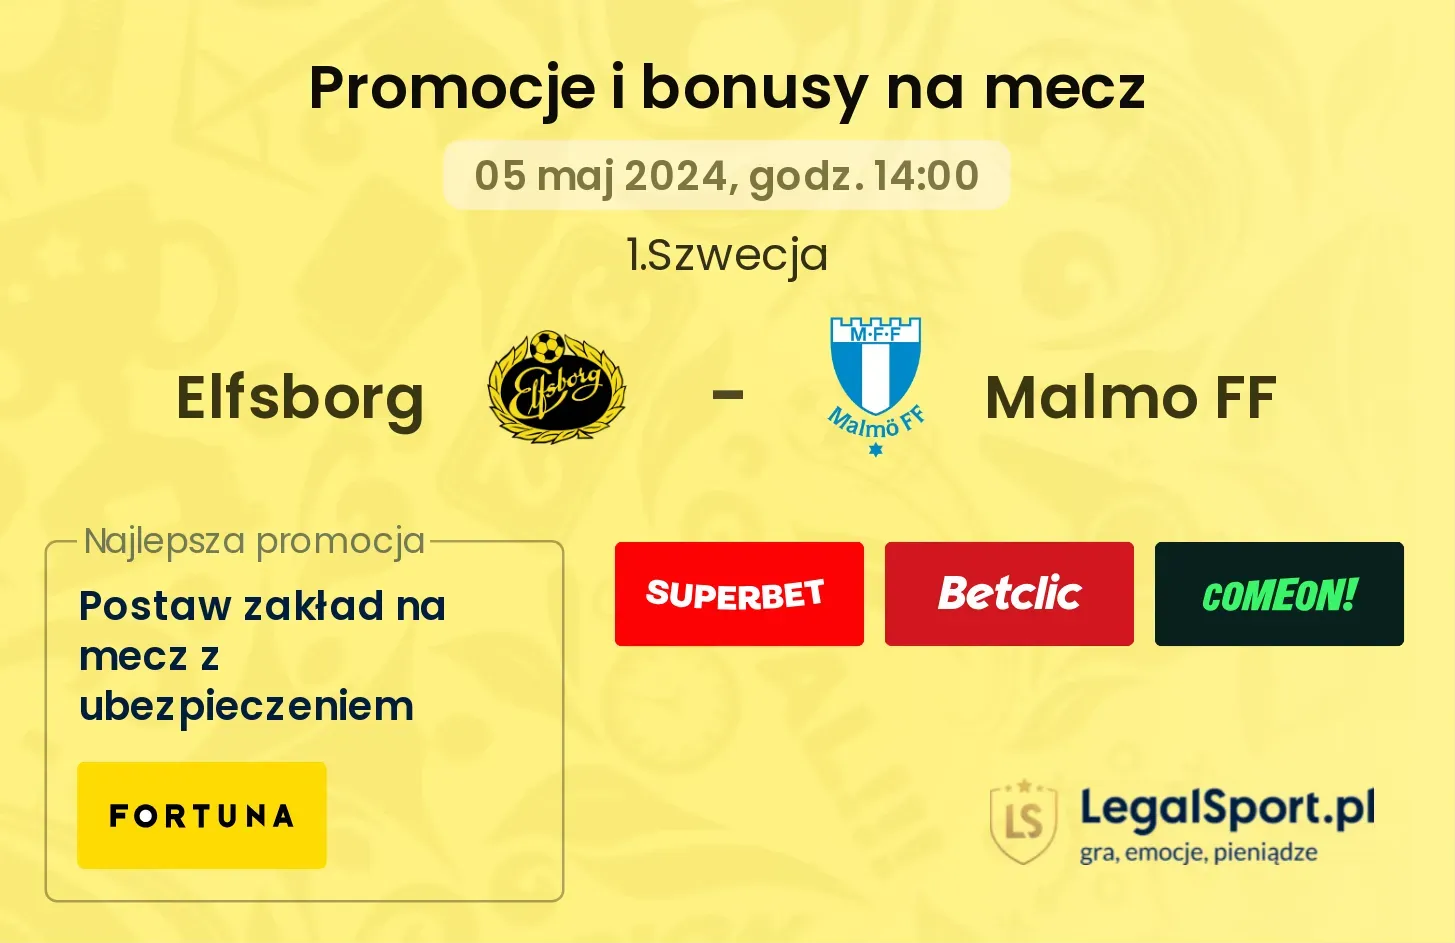 Elfsborg - Malmo FF promocje bonusy na mecz